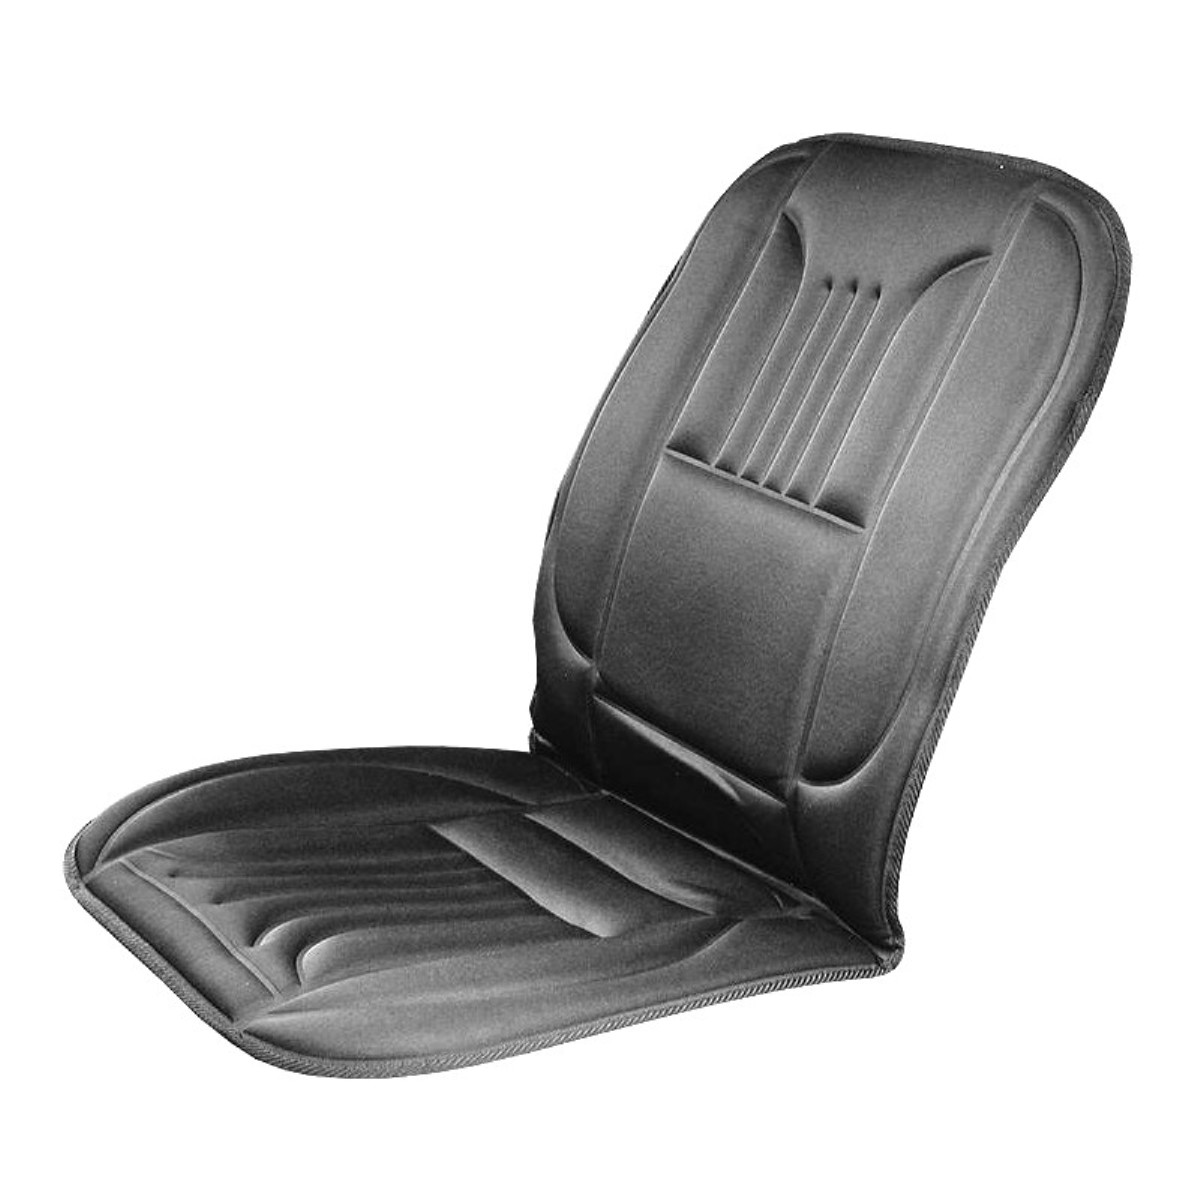 Sitzheizung Auto Auflage,12V Auto Heizkissen Kfz Pkw Sitzheizung mit Rutschfesten Silikonpartikeln,105 X 50cm 